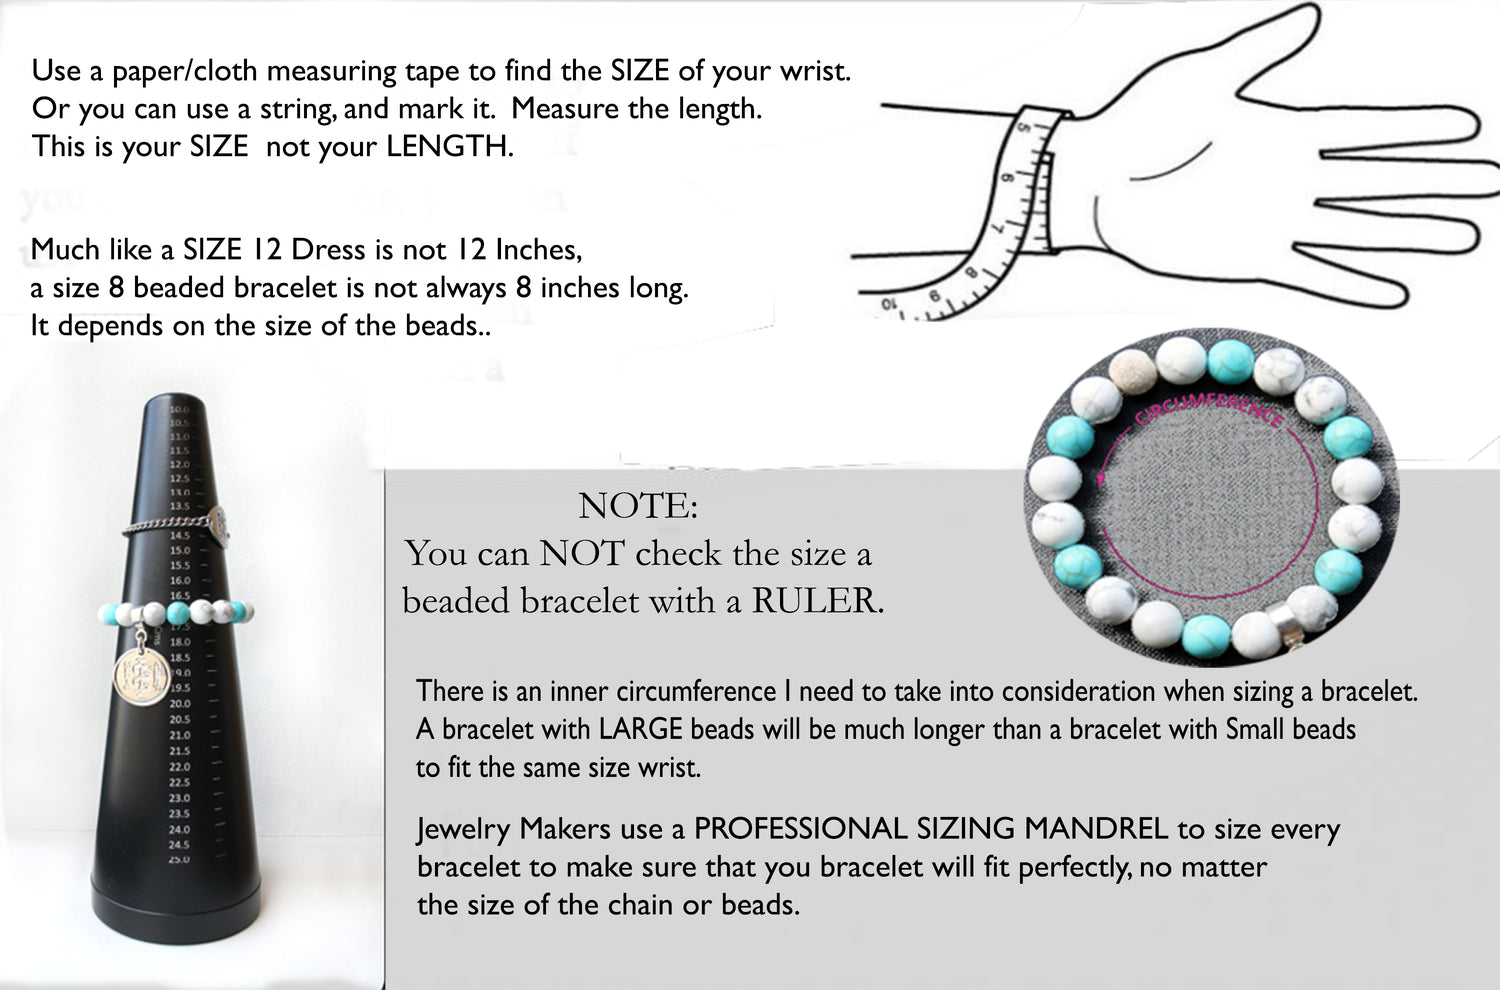 7 Stone Genuine Chakra Bracelet, Designer Grade Mindfulness Gift, 14K GF Real Crystals Protection, Gemstone Bracelet Medatation Gifts B7018